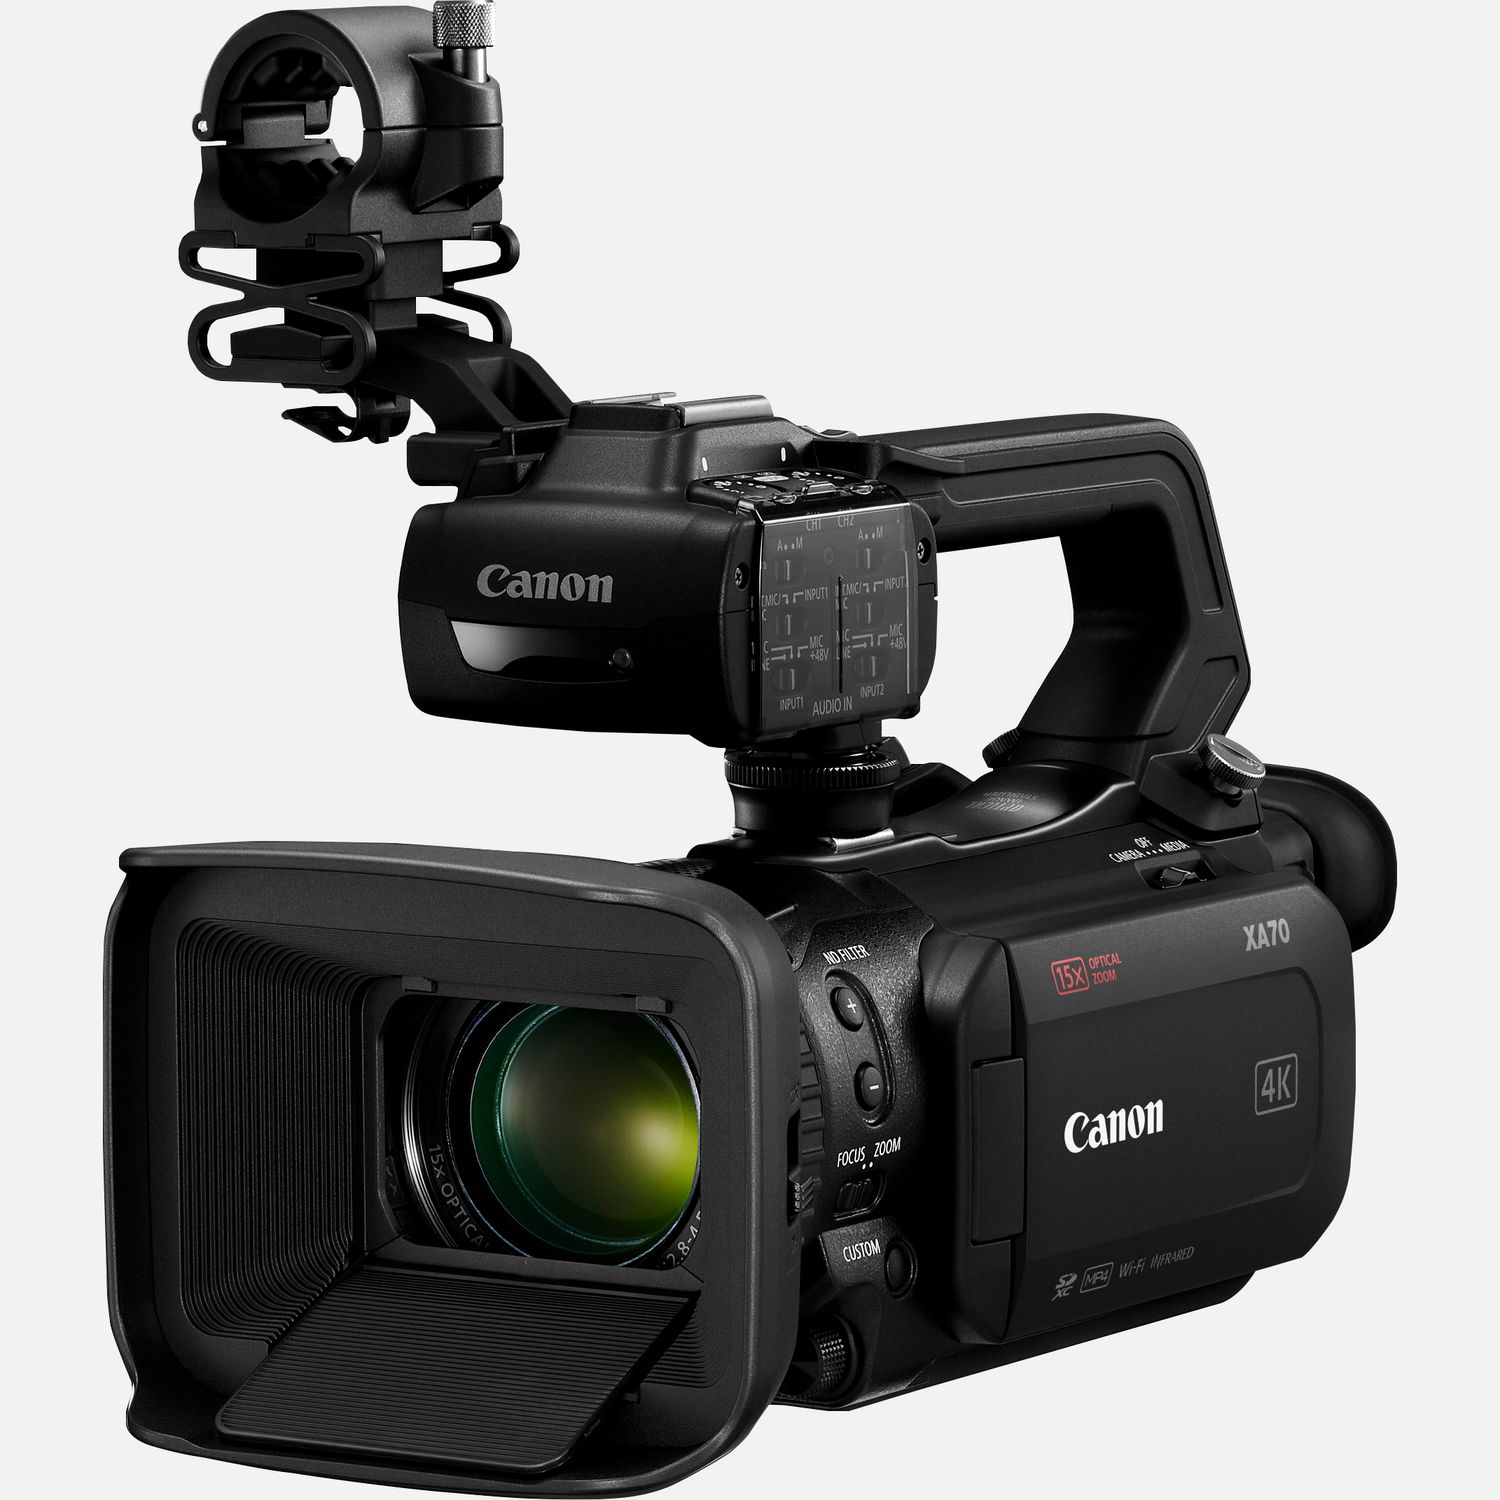 Die Canon XA70 ist eine professionelle 4K-Videokamera, die viele Profi-Funktionen im kompakten Gehuse bietet. Der Camcorder ist einfach zu bedienen und eignet sich fr Dokumentarfilme, Journalismus und viele weitere Anwendungen, bei denen 3G-SDI nicht erforderlich ist. Der 1,0-Zoll-Typ CMOS-Sensor und der DIGIC DV6-Prozessor sorgen mit Oversampling fr besonders hochwertige HD-Videos. Der Canon Dual Pixel CMOS AF und das Objektiv mit 15fach optischem Zoom sorgen fr scharfe Bilder. Und wenn du deine Inhalte live bertragen willst, bietet der Camcorder HD-Livestreaming in UVC via USB-C. Die Canon XA70 kann in zwei Modi aufzeichnen  XF-AVC oder MP4. Dank des HDMI-Ausgangs lsst sich das aufgezeichnete Material problemlos in einen breiteren professionellen Workflow einbinden.  Vorteile      Der 4K 1,0-Zoll-Typ CMOS-Sensor und der DIGIC DV6 Bildprozessor sorgen fr atemberaubende 4K UHD- und hervorragende FullHD-Aufnahmen. Durch Oversampling der Sensordaten liefert der Camcorder auch erstklassige FullHD-Videos.          Das Canon Objektiv deckt einen Brennweitenbereich von 25,5 bis 382 mm (quivalent KB-Vollformat) ab. Der Digitalzoom liefert eine 300-fache Vergrerung mit 5-Achsen-Bildstabilisierung.          Die einstellbare Fokussiergeschwindigkeit und der Dual Pixel CMOS AF ermglichen eine schnelle und przise Fokussierung.          Auf dem 3,5-Zoll LC-Display kannst du den gewnschten Fokuspunkt per Berhrung festlegen. Gesichtserkennungs-AF und Gesichtsverfolgung sind verfgbar, whrend der Fokus-/Zoomring die manuelle Fokussierung ermglicht.          Als Aufnahmeformat kannst du zwischen XF-AVC und MP4 whlen. XF-AVC 4K UHD 160 Mbit/s wird mit 25p aufgenommen und FullHD 45 Mbit/s mit 50p/ 50i/ 25p. Wenn kleinere Dateien gewnscht werden, stehen MP4 4K mit 150 Mbit/s und 25p sowie Full HD mit 35/17 Mbit/s und 50p/25p zur Verfgung.          Zu den Aufnahmeoptionen gehren die gleichzeitige Backup- und fortlaufende Aufzeichnung ber zwei SD-Karten sowie der Infrarot-Modus.          Auerdem stehen Zeitlupenaufnahmen in Full HD mit halber Geschwindigkeit oder Zeitrafferaufnahmen in 4K/Full HD mit bis zu 1.200-facher Geschwindigkeit zur Verfgung. Eine Farbabstimmung mit anderen Canon Kameras ist ber das Men fr benutzerdefinierte Bildeinstellungen mglich.          Du kannst HD-Videos via UVC mit einem Computer live streamen und bei Bedarf auch einen Datums- und Zeitstempel einblenden. Zwei XLR-Anschlsse am abnehmbaren Griff und 4-Kanal-Linear-PCM bieten zudem professionelle Audiooptionen.          Lieferumfang       XA70 professioneller Camcorder         Tragegriff HDU-1         PD-E1 USB-Netzadapter         BP-820 Akku         Streulichtblende mit integriertem Objektivschutz         Mikrofonhalter              Technische Daten              4K UHD / 25p - MP4 bis 150 Mbit/s, XF-AVC bis 160 Mbit/s                15fach optischer Zoom  25,5 - 382,5mm, 4K Weitwinkel-Zoom                HD-Verarbeitung mit Oversampling  verwendet den 4K UHD-Sensor, um erstklassige Full HD-Bilder zu generieren                Optischer IS  Optimierter optischer 5-Achsen-Bildstabilisator mit Dynamic IS                Infrarot-Modus  Fr hochwertige Videoaufnahmen bei extrem wenig bis gar keinem Umgebungslicht                Touchscreen  3,5-Zoll-Touchscreen fr die intuitive Kamera- und Autofokussteuerung                4-Kanal-Audio  Lineares PCM-Audio und 2 XLR-Eingnge plus integriertes Mikrofon                Zwei Speicherkarten-Steckpltze  Gleichzeitige oder fortlaufende Aufzeichnung auf SD-Karte                USB-C - Livestreaming per Mac oder PC oder mit dem Canon GP-E2 GPS-Empfnger          Alle technischen Daten zeigen